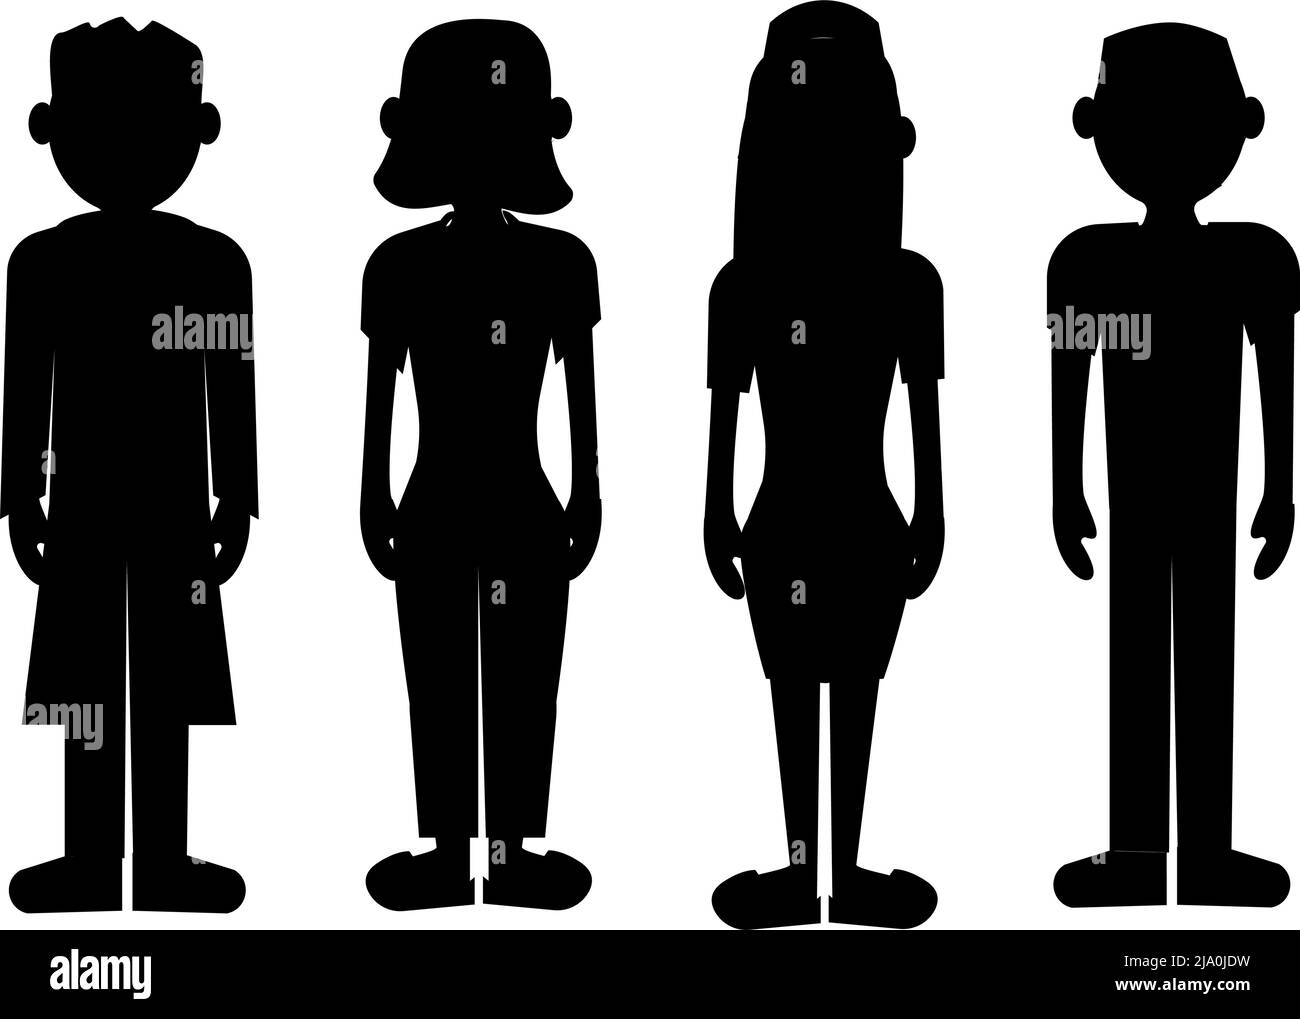 Schwarze Silhouetten von vier Personen, Angestellten oder Geschäftsleuten, und Frauen, eine Gruppe von Menschen bei der Arbeit. Zeichentrickfiguren Stock Vektor